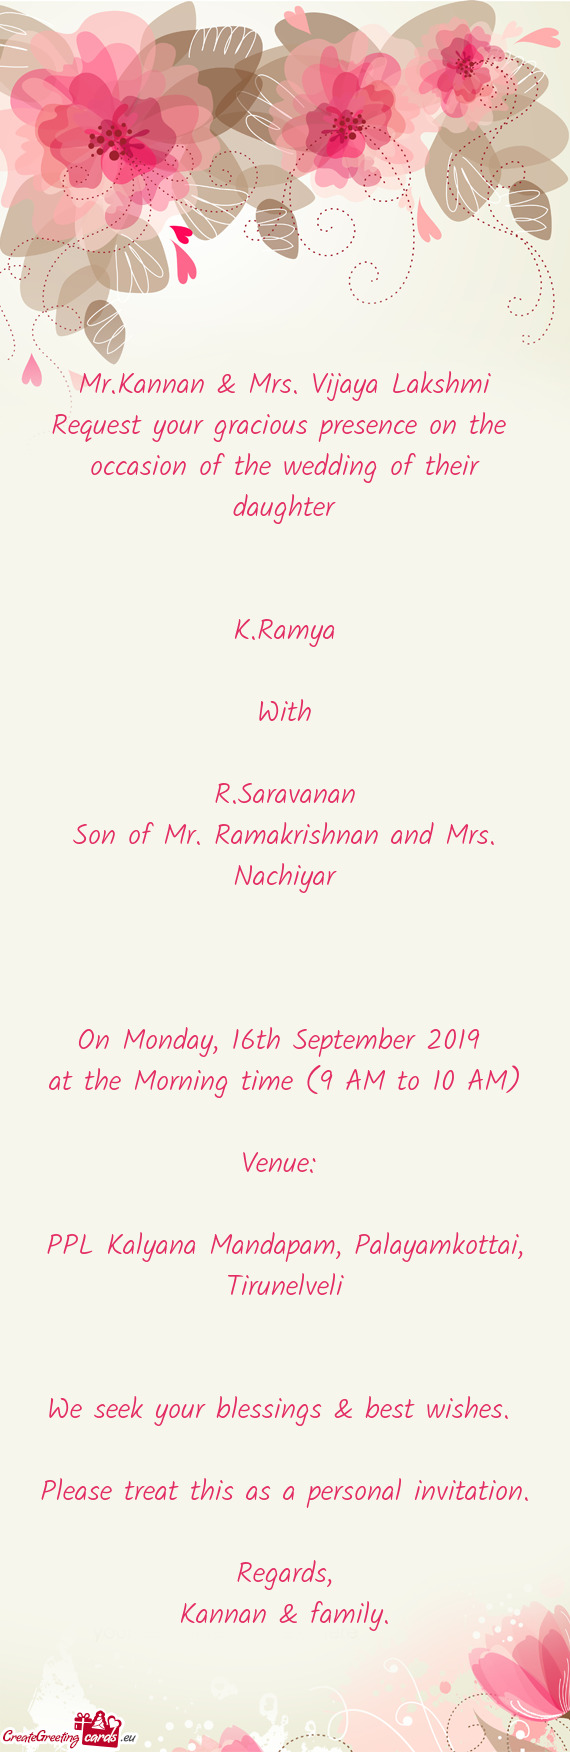 Son of Mr. Ramakrishnan and Mrs. Nachiyar